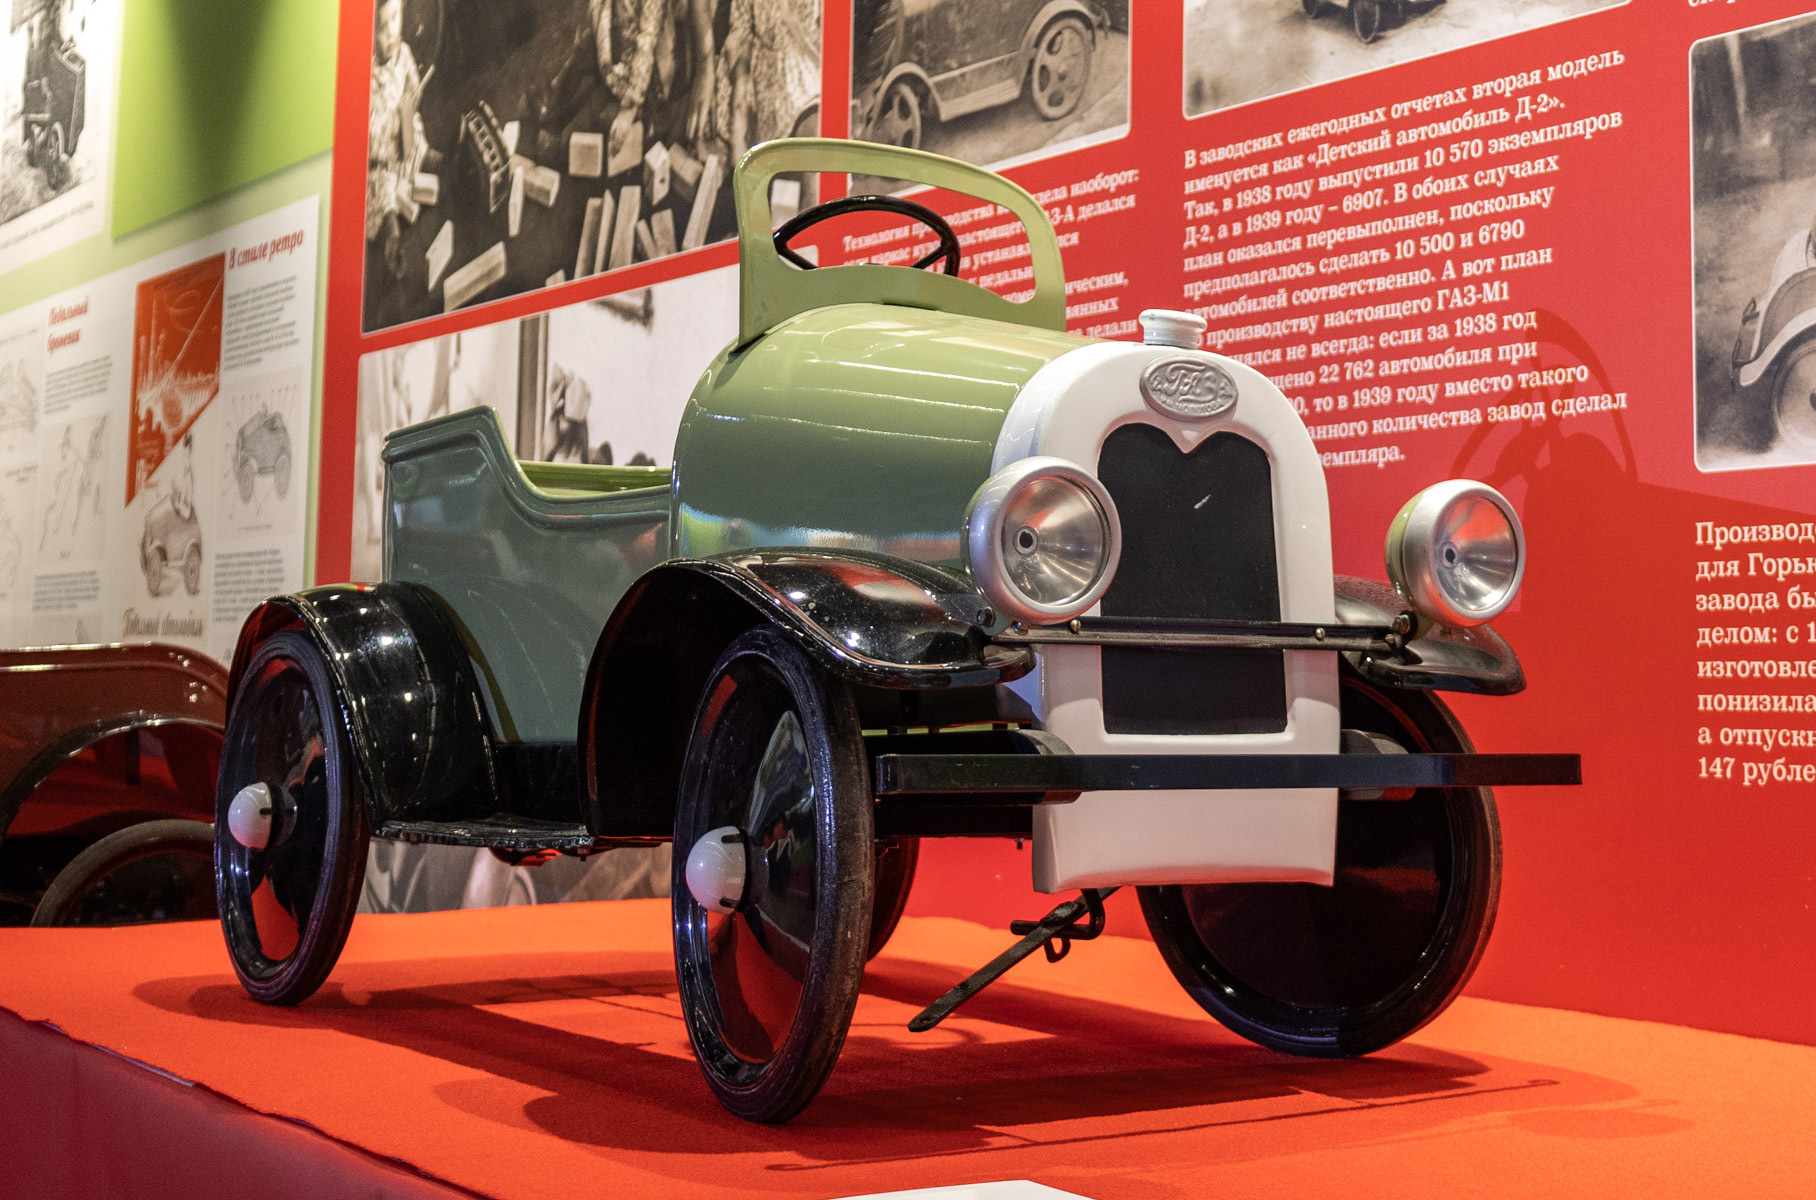 Самым первым педальным автомобилем в Советском Союзе стал ГАЗ. Производство его началось в 1934 году. Образ машинки напоминал фаэтон ГАЗ-А.